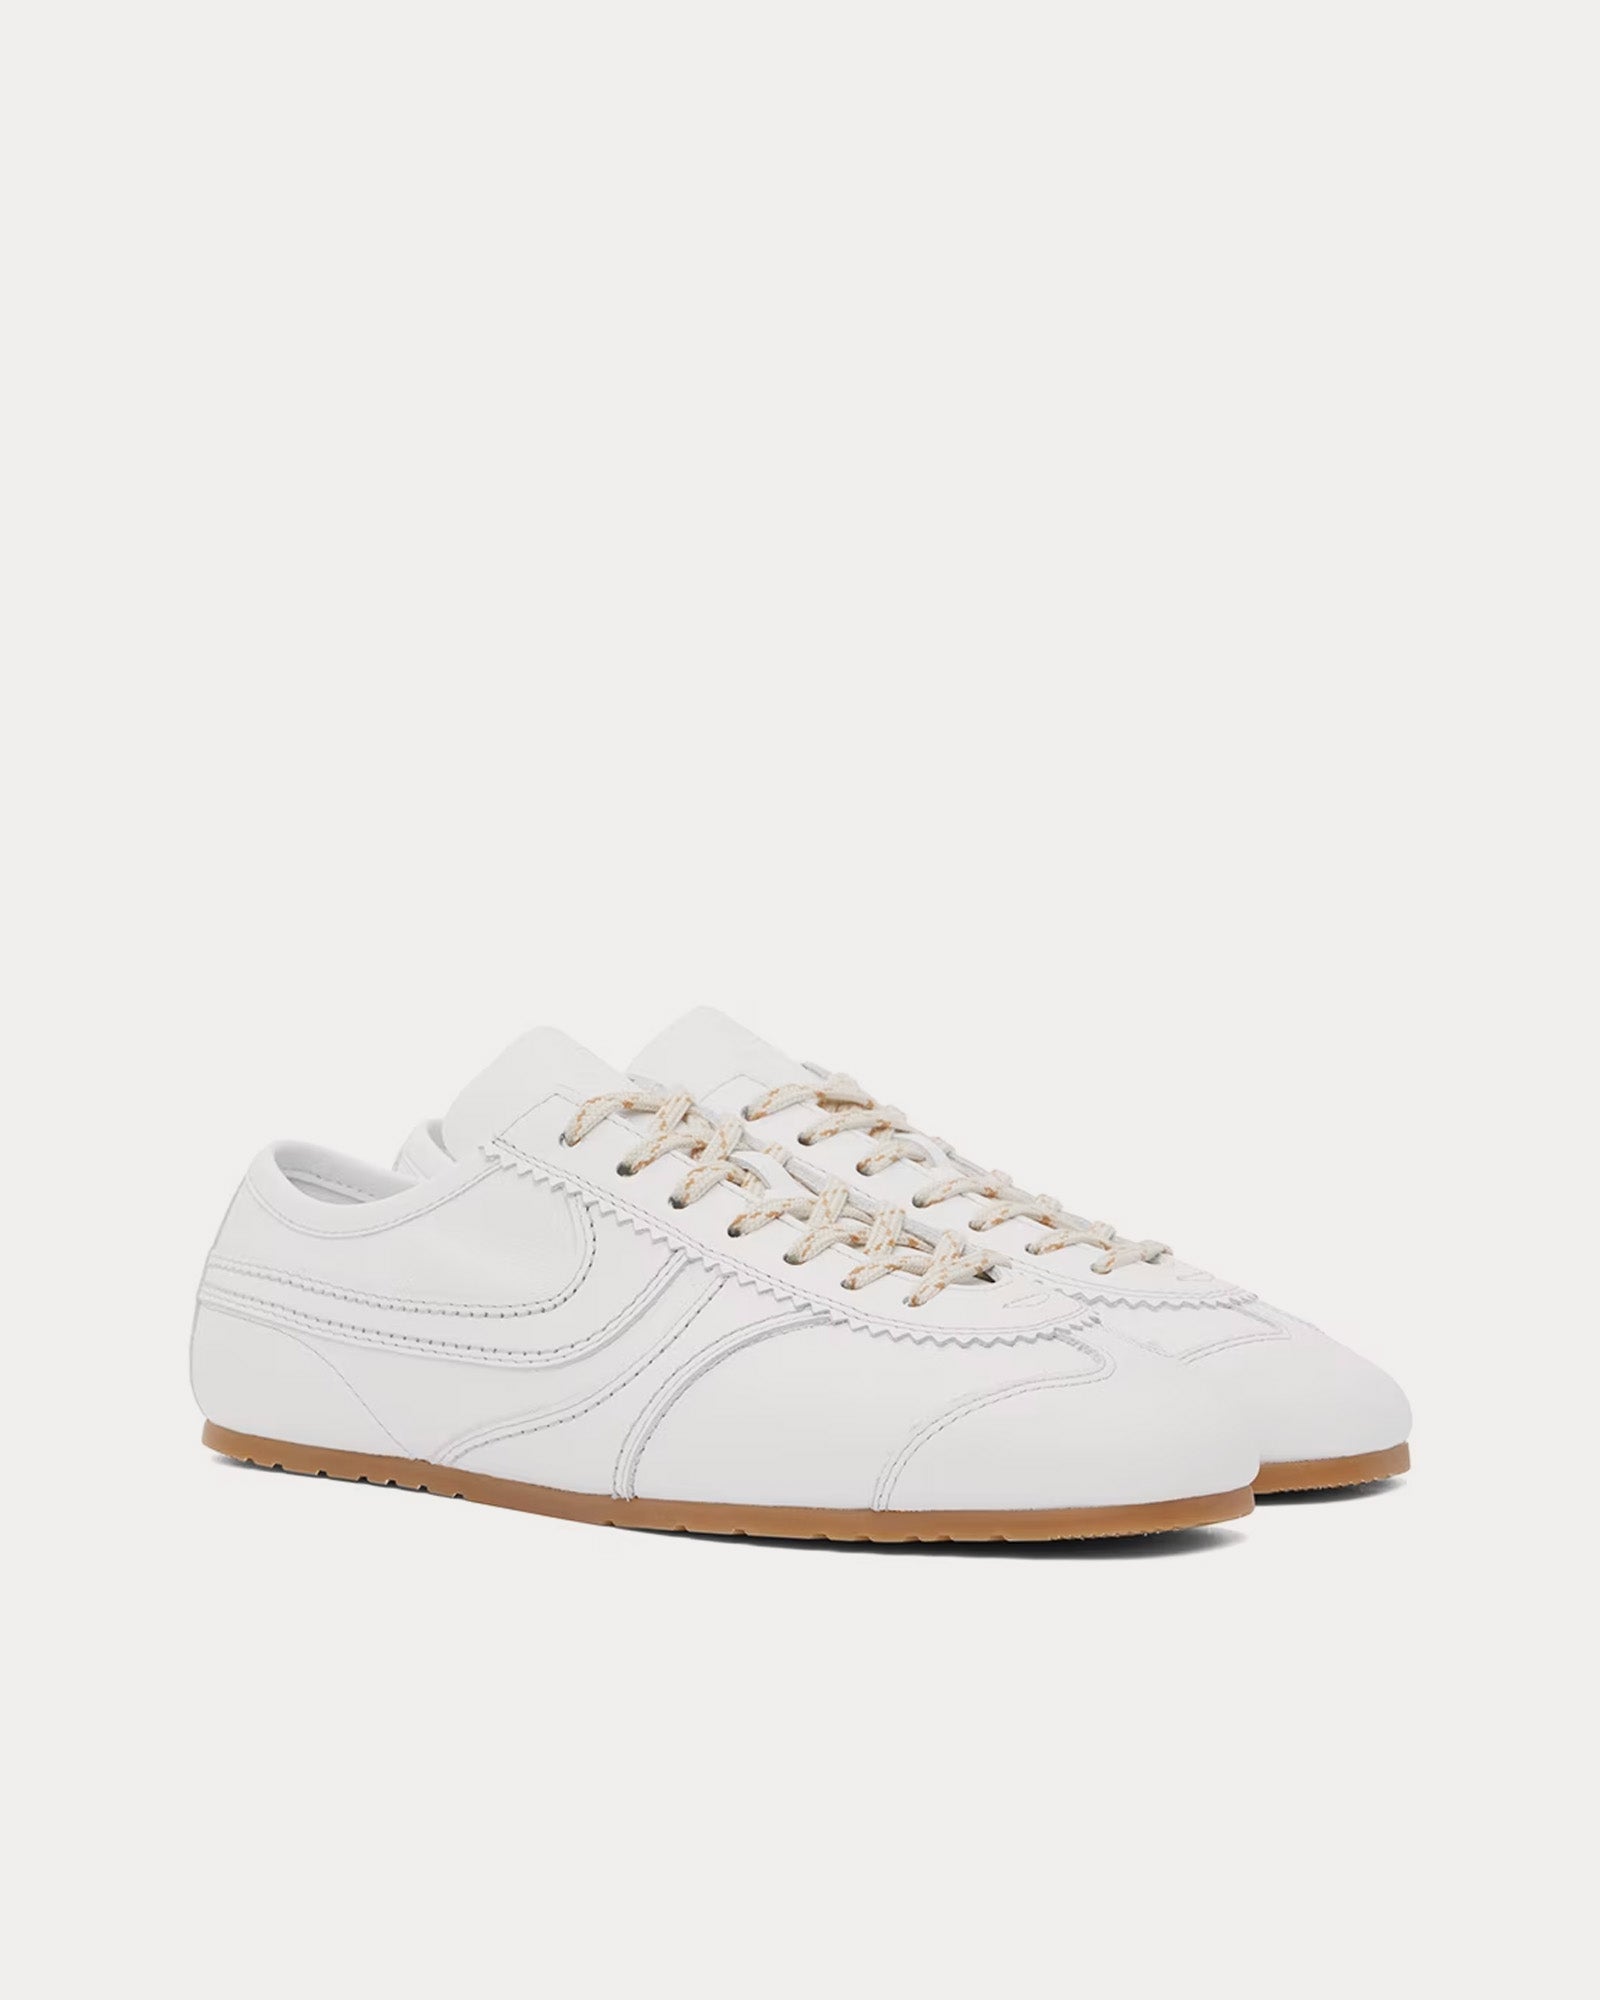 Dries Van Noten - 70's Suede White Low Top Sneakers